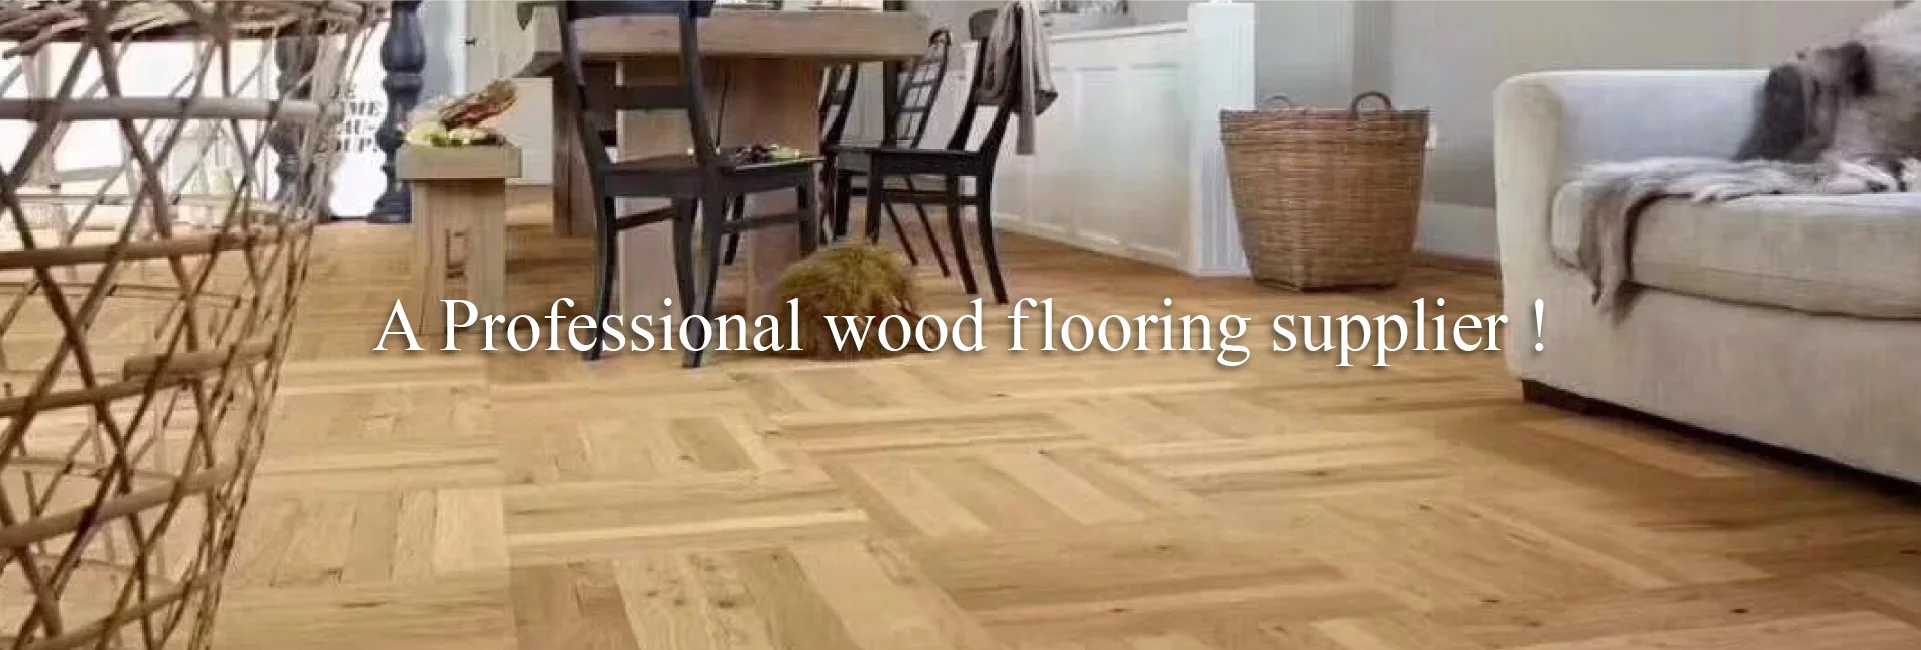 Vif International Co Ltd Wood Flooring Hardwood Flooring